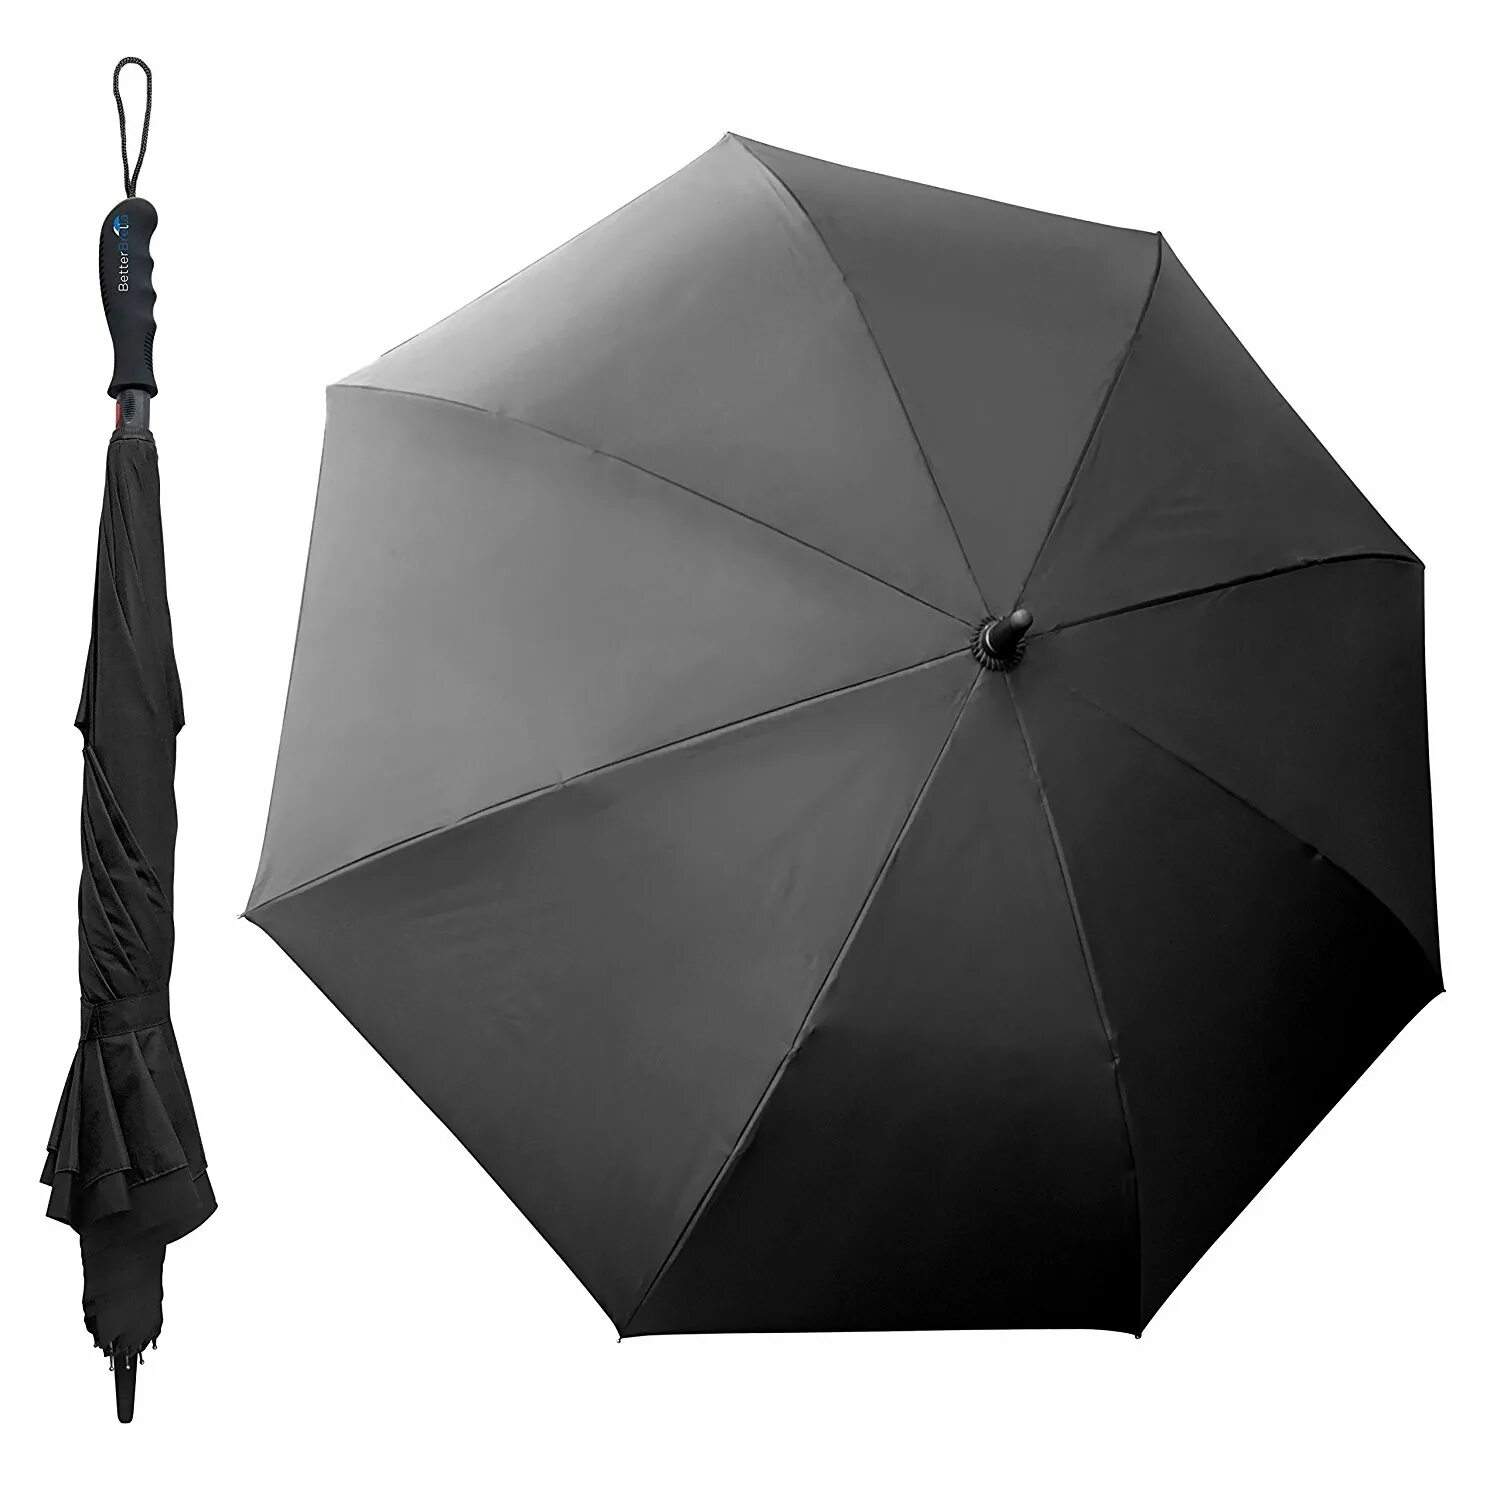 Зонт черный. Раскрытый зонт. Самый удобный зонт. Blek zond. I need umbrella